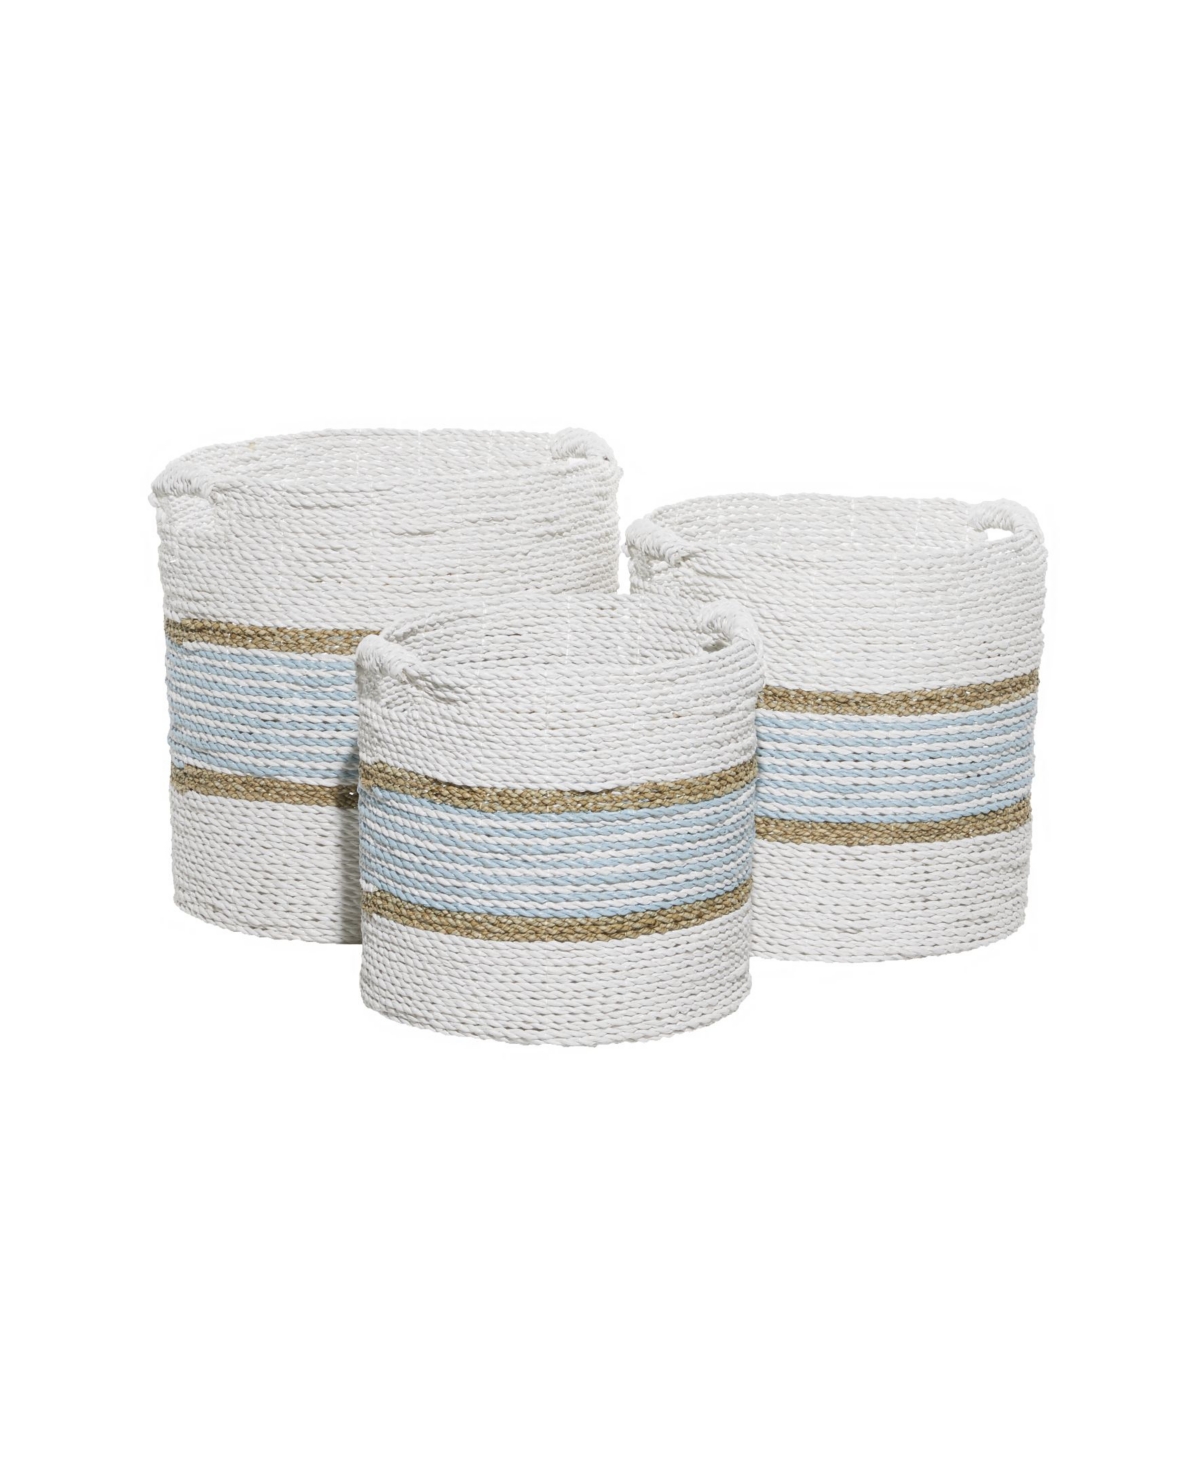 Rosemary Lane Wood Coastal Storage Basket, Set Of 3 In White